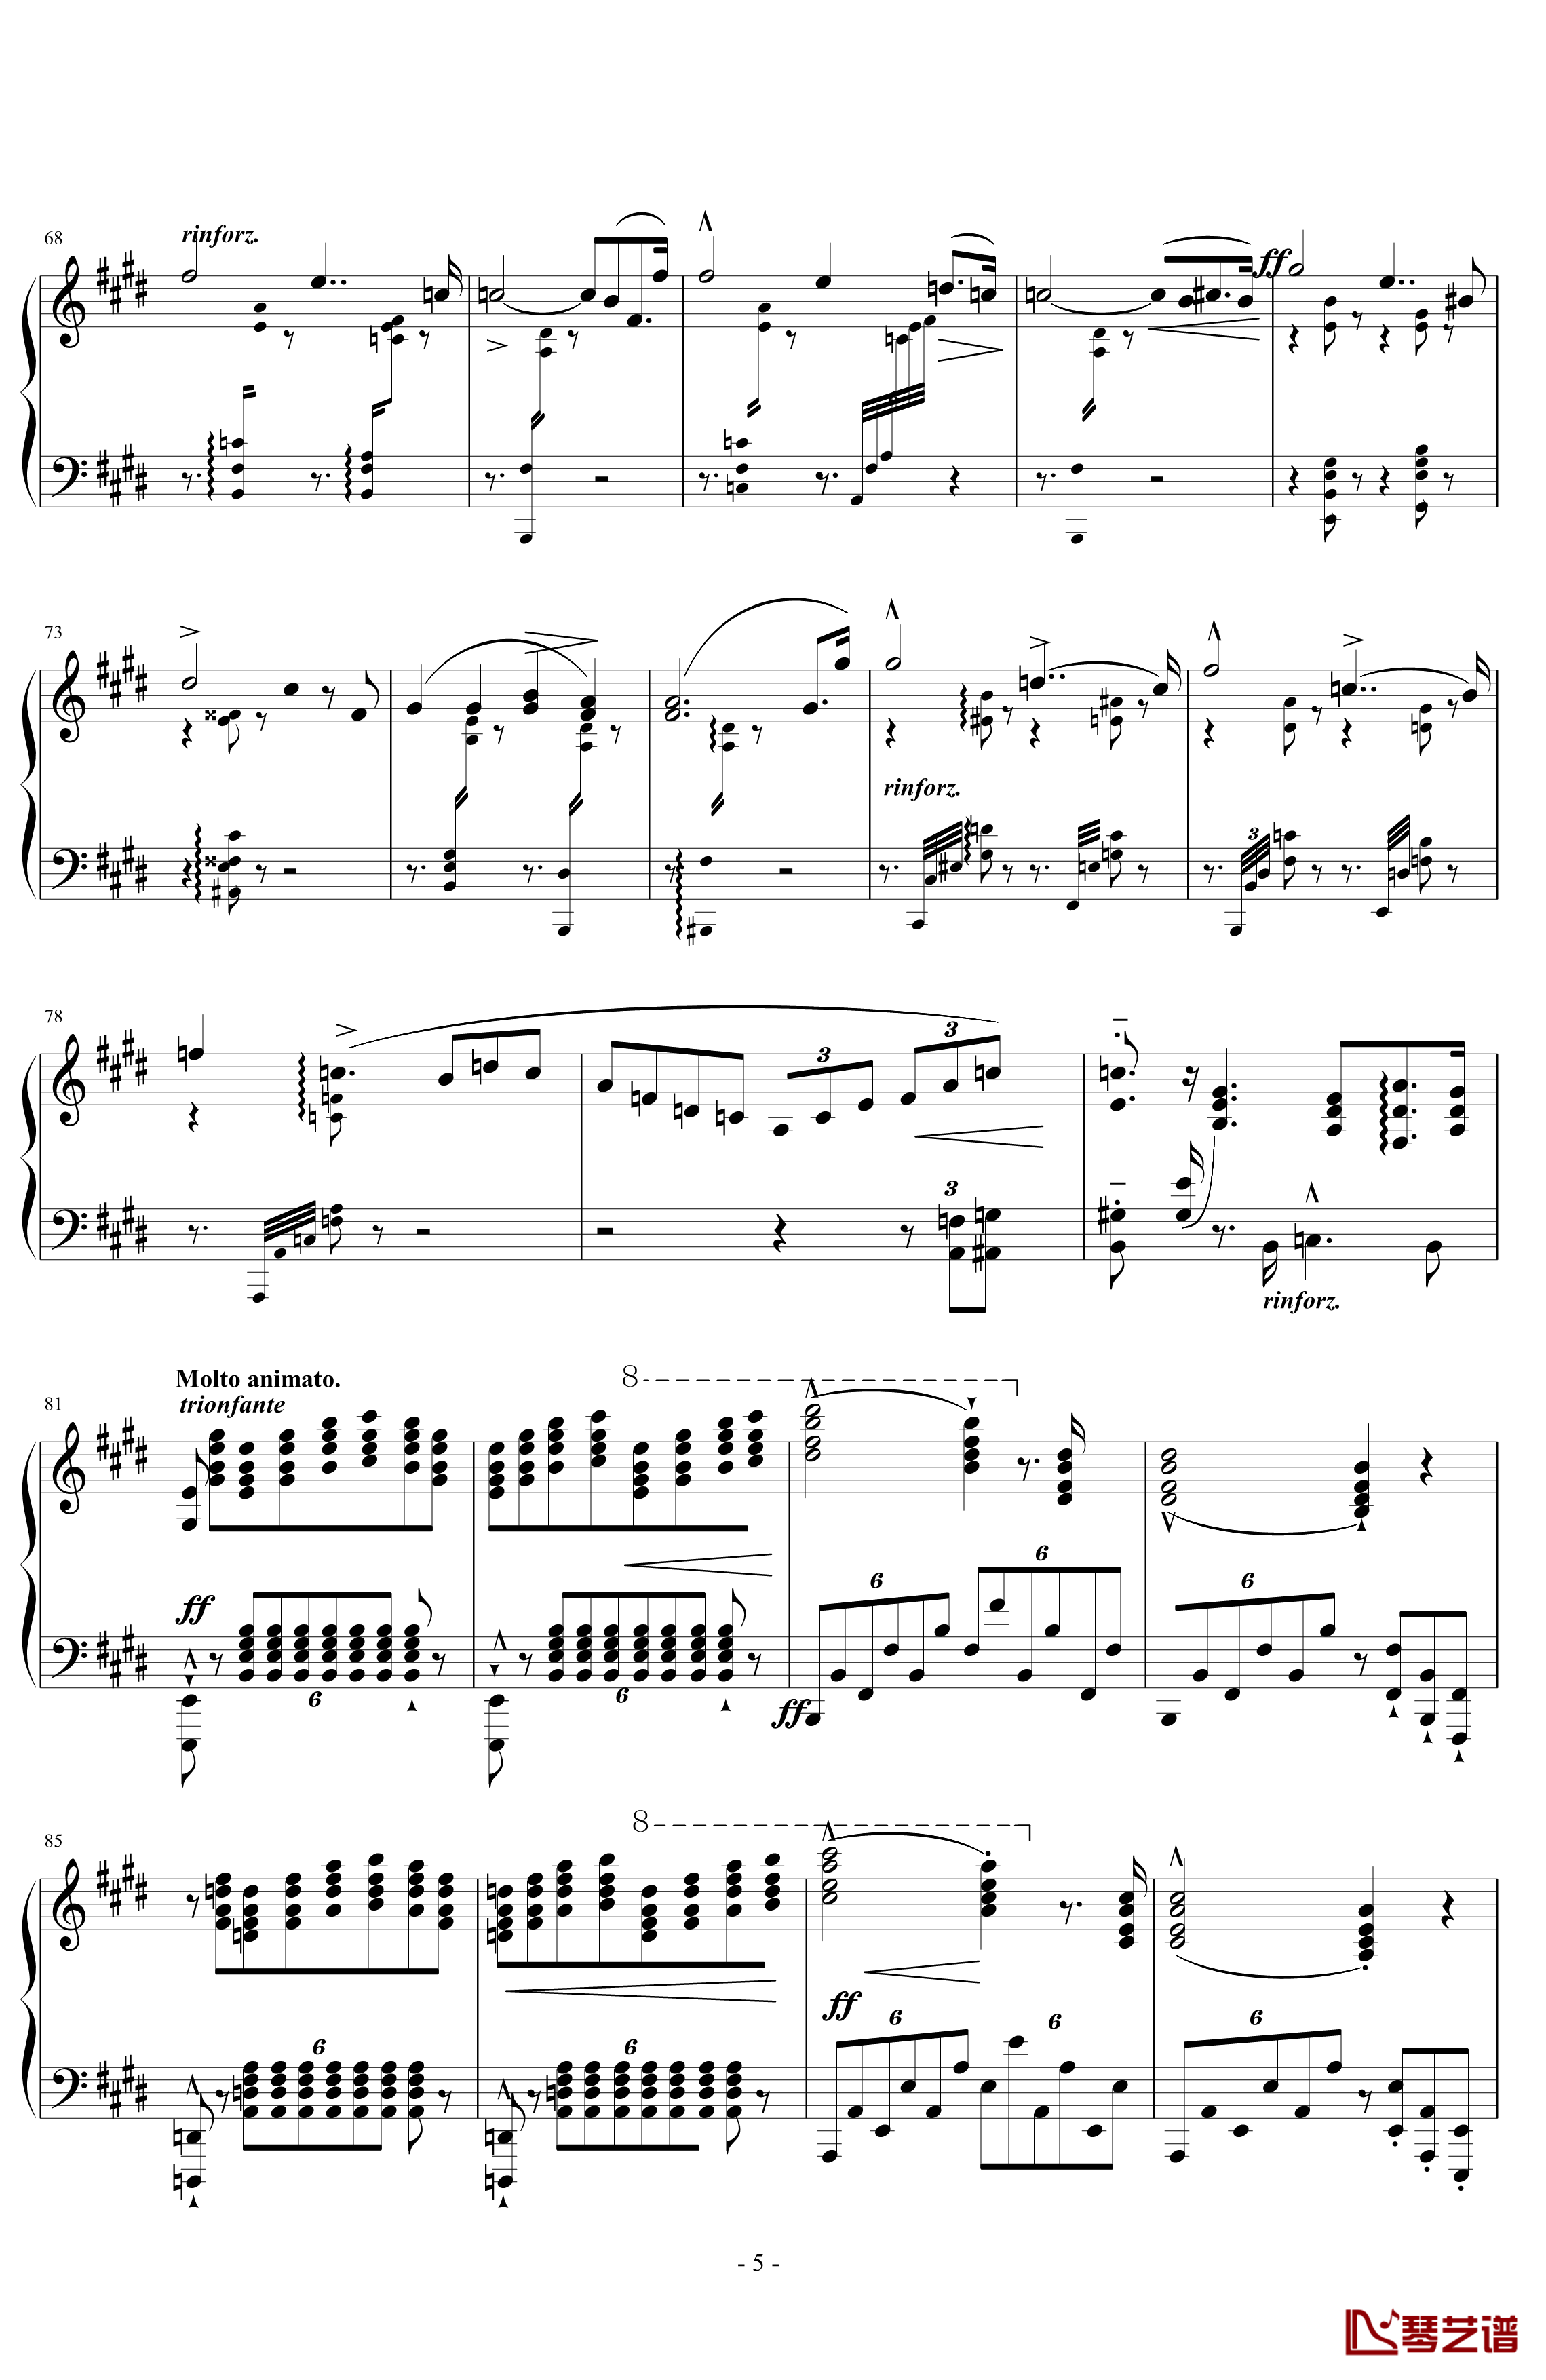 超技练习曲第11号钢琴谱-夜之和谐-李斯特5